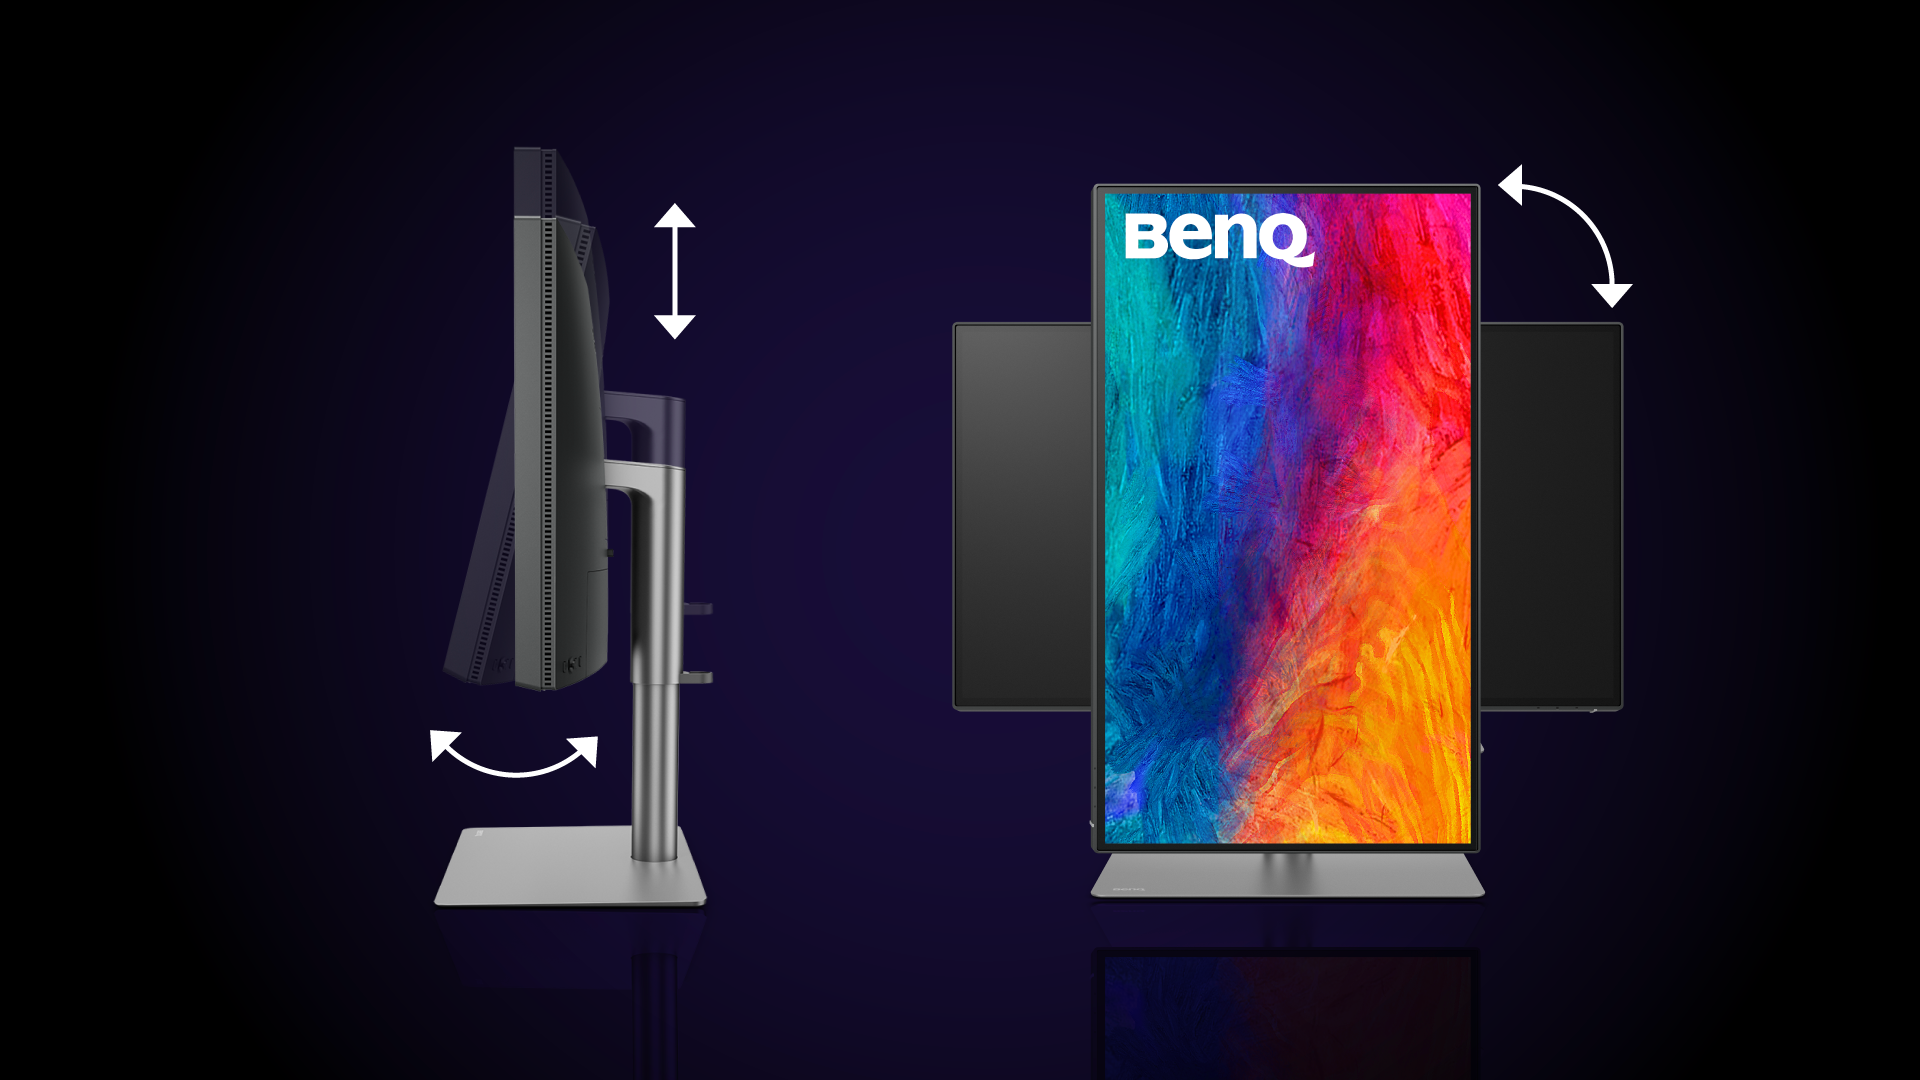 „Mac“ įrenginiams skirtuose „BenQ“ monitoriuose sumontuotas pažangus stovas, leidžiantis tiksliai nustatyti norimą monitoriaus vietą, be to, stovas puikiai atrodo ir dera „Mac“ aplinkoje. Naudodami pakreipimo, pasukimo, pasukimo ir aukščio reguliavimo funkcijas nustatykite idealią monitoriaus padėtį, kad žiūrėti į jį būtų kuo patogiausia. Nesvarbu, kokią užduotį atliekate, tinkamas monitoriaus kampas ir padėtis padidina komfortą, skatina produktyvumą ir sumažina tokių nepatogumų kaip akių įtampa ar kaklo skausmas, tikimybę. 